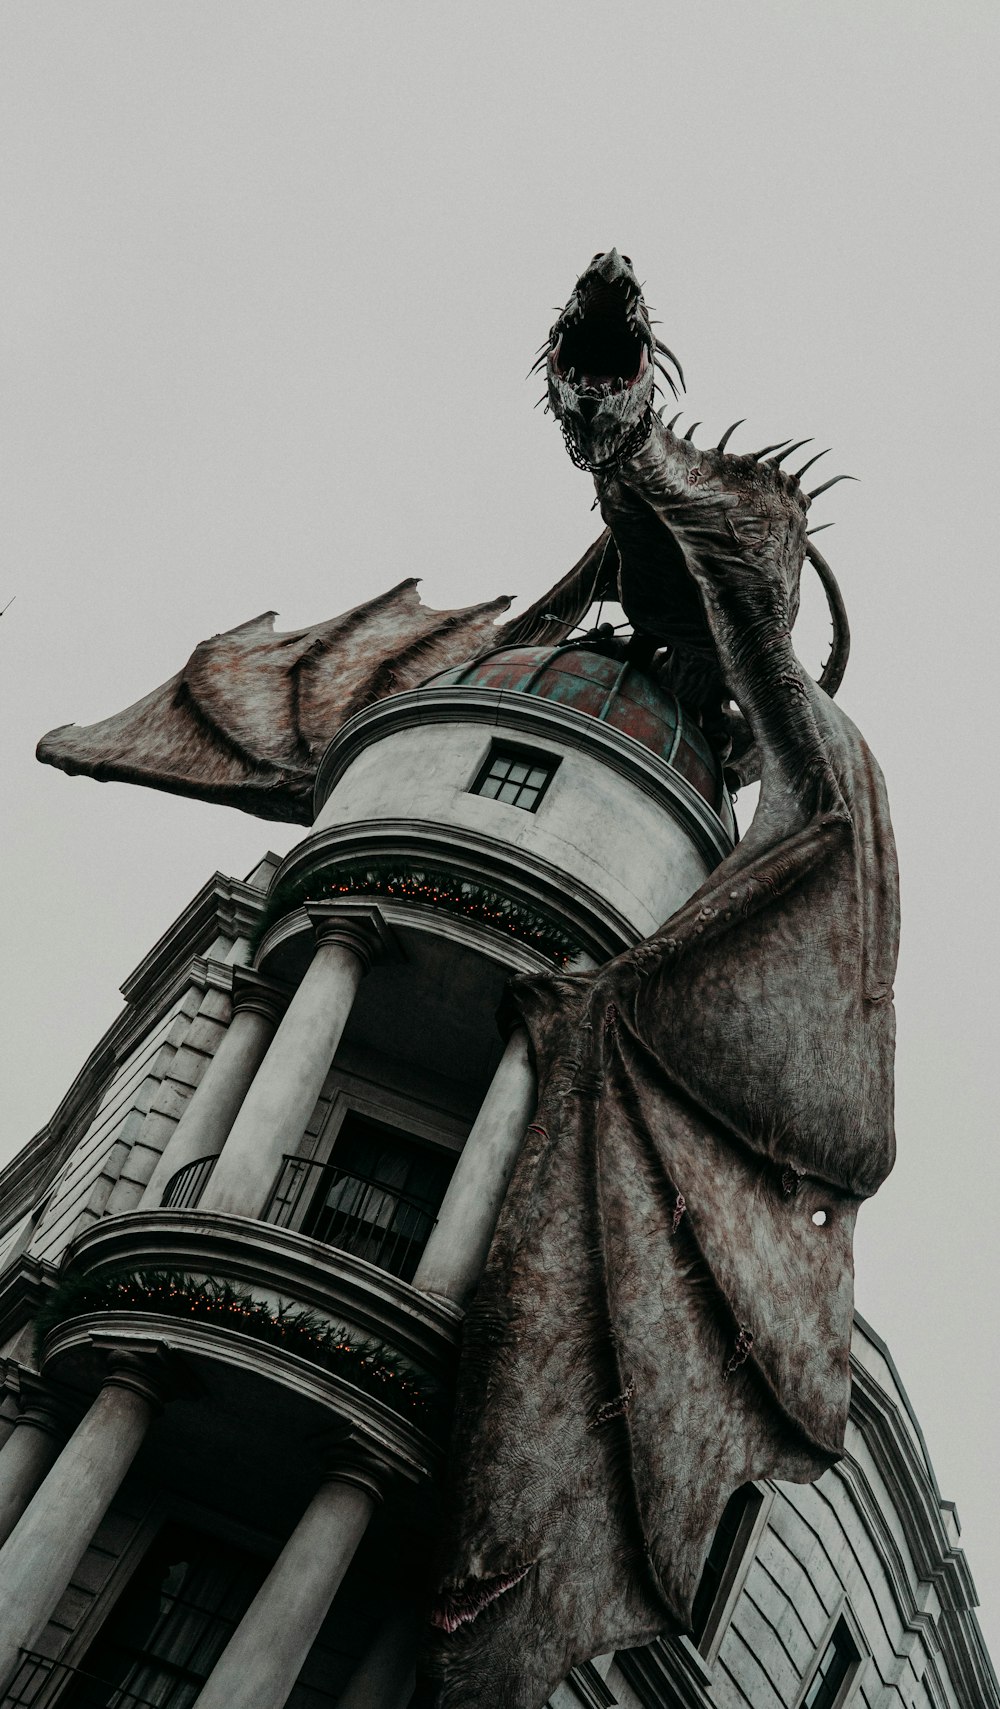 foto de foco raso do dragão no edifício cinza